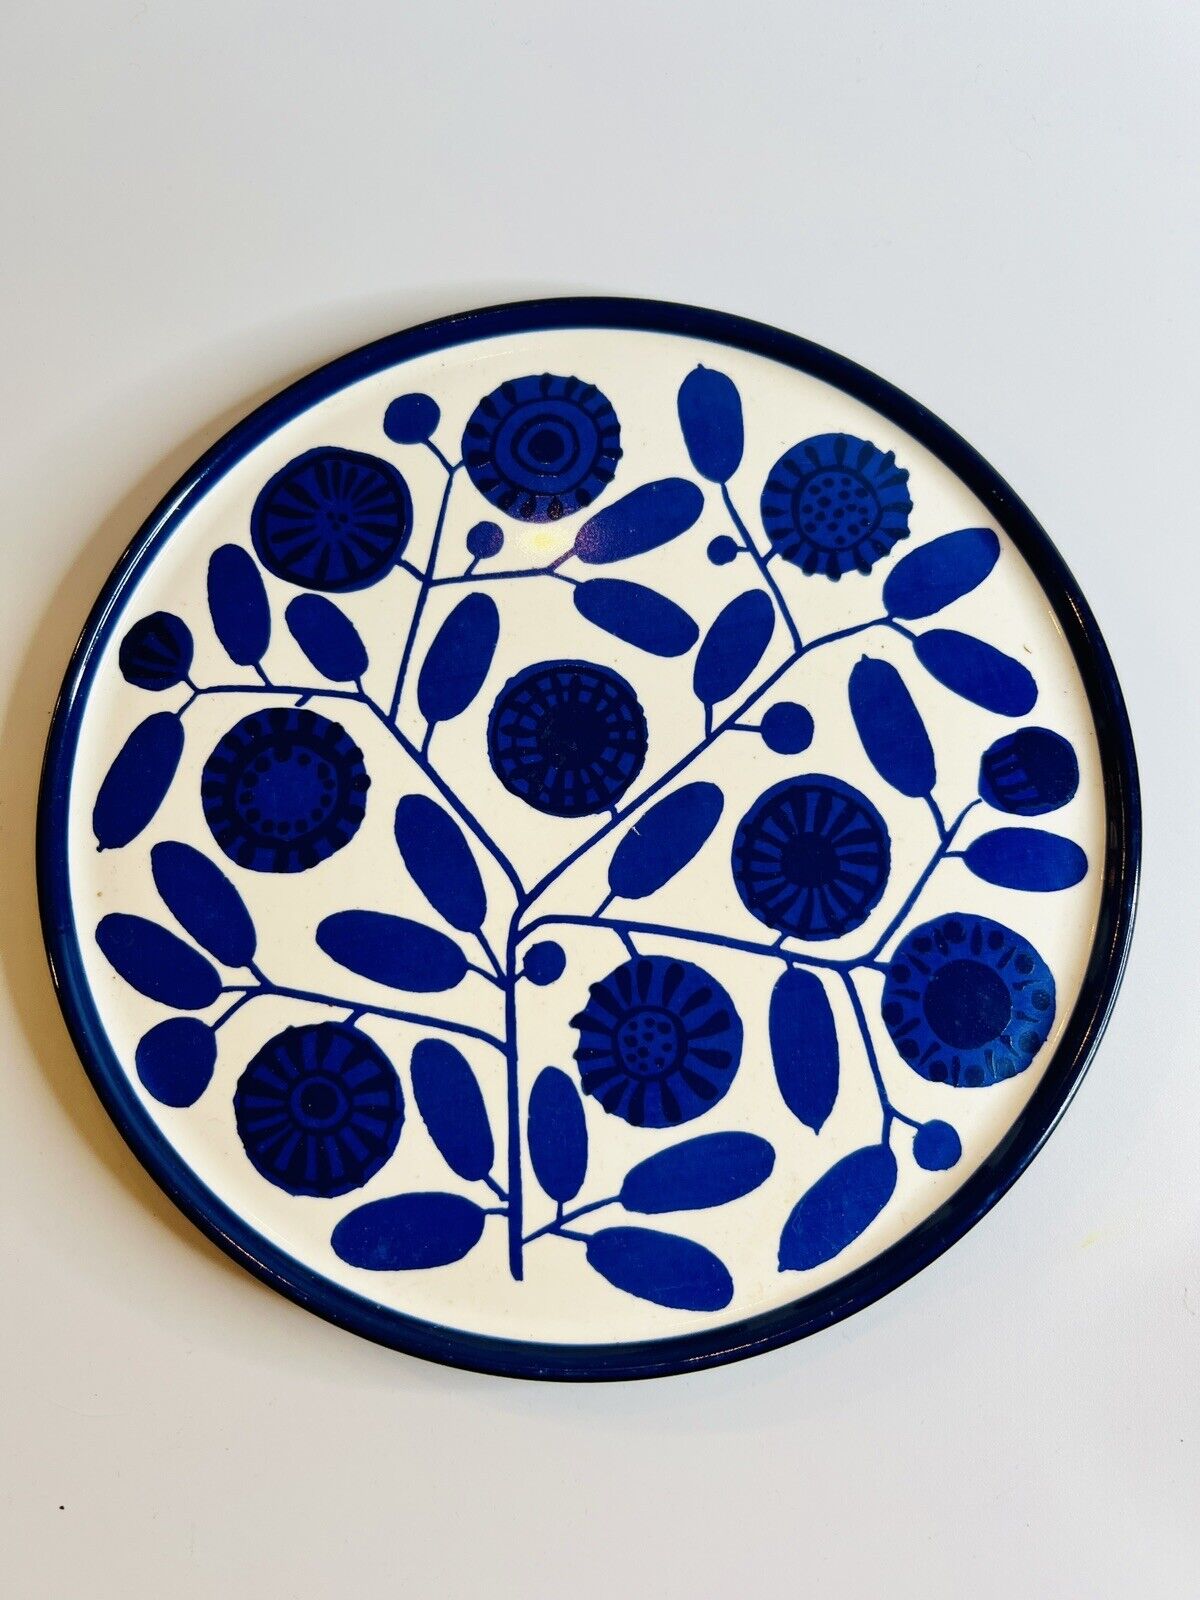 1960s MCM Melitta Porcelain Blue Sunflower Dessert Plate 7.25” Germany